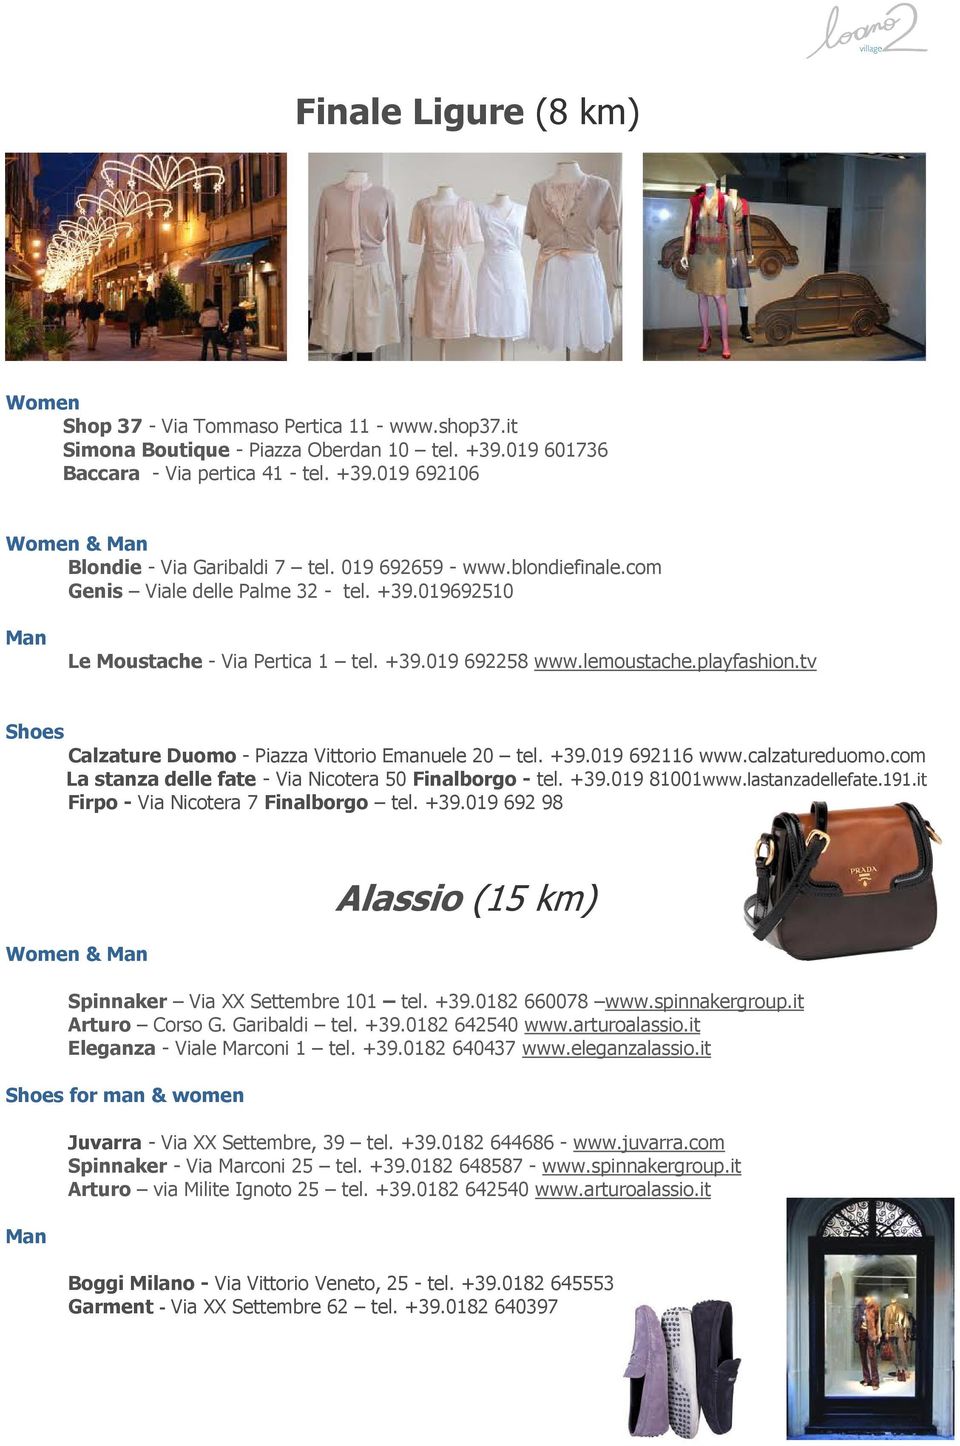 tv Shoes Calzature Duomo - Piazza Vittorio Emanuele 20 tel. +39.019 692116 www.calzatureduomo.com La stanza delle fate - Via Nicotera 50 Finalborgo - tel. +39.019 81001www.lastanzadellefate.191.